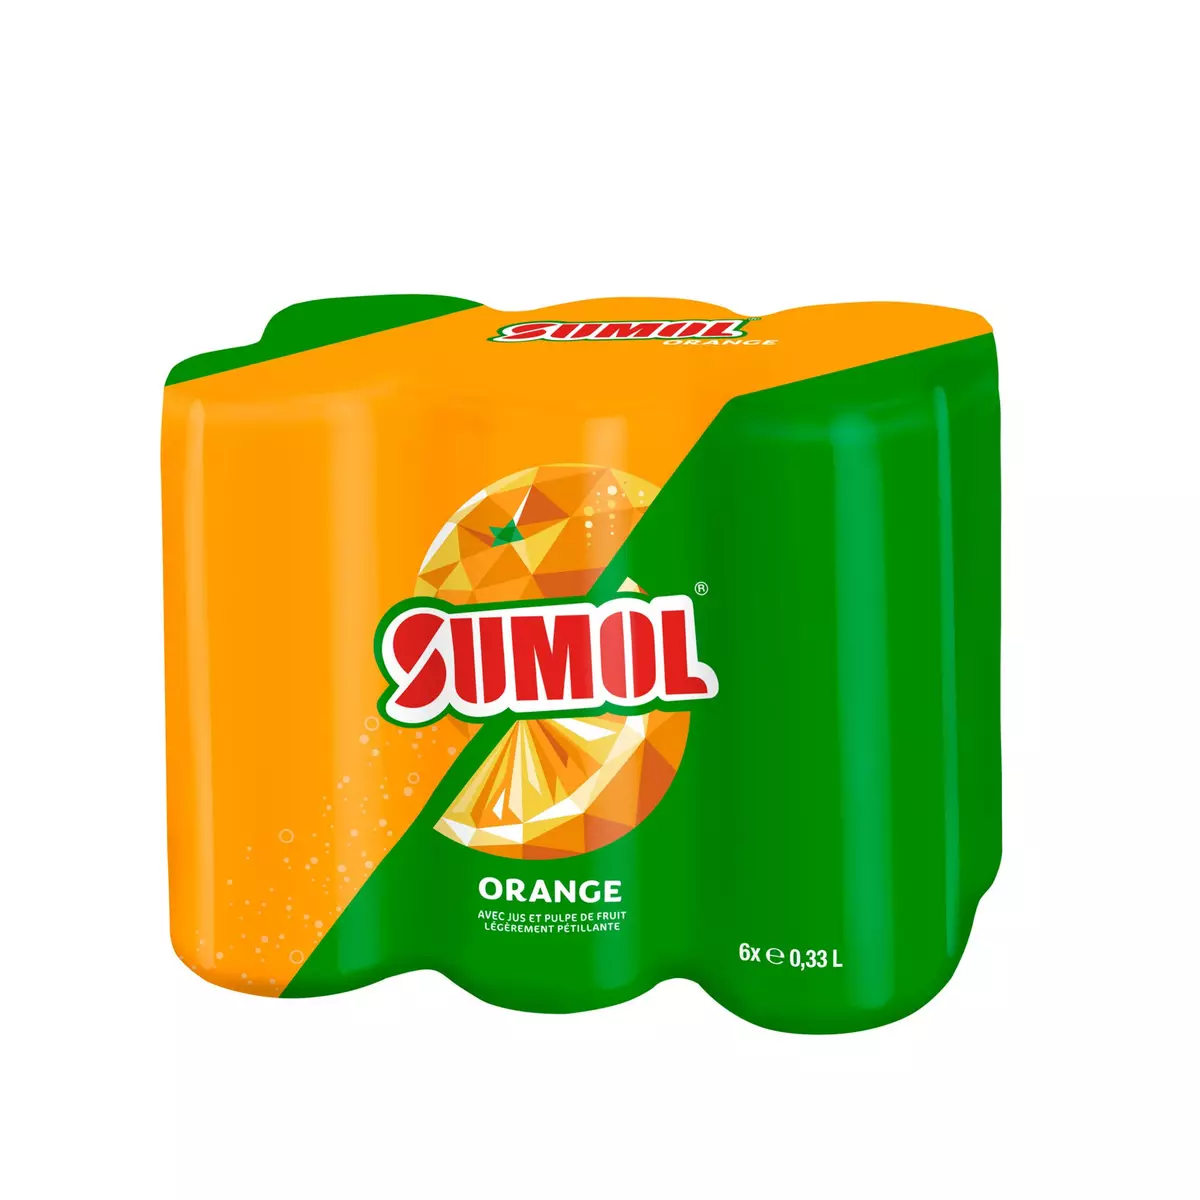 SUMOL Boisson gazeuse saveur orange boîte 6x33cl